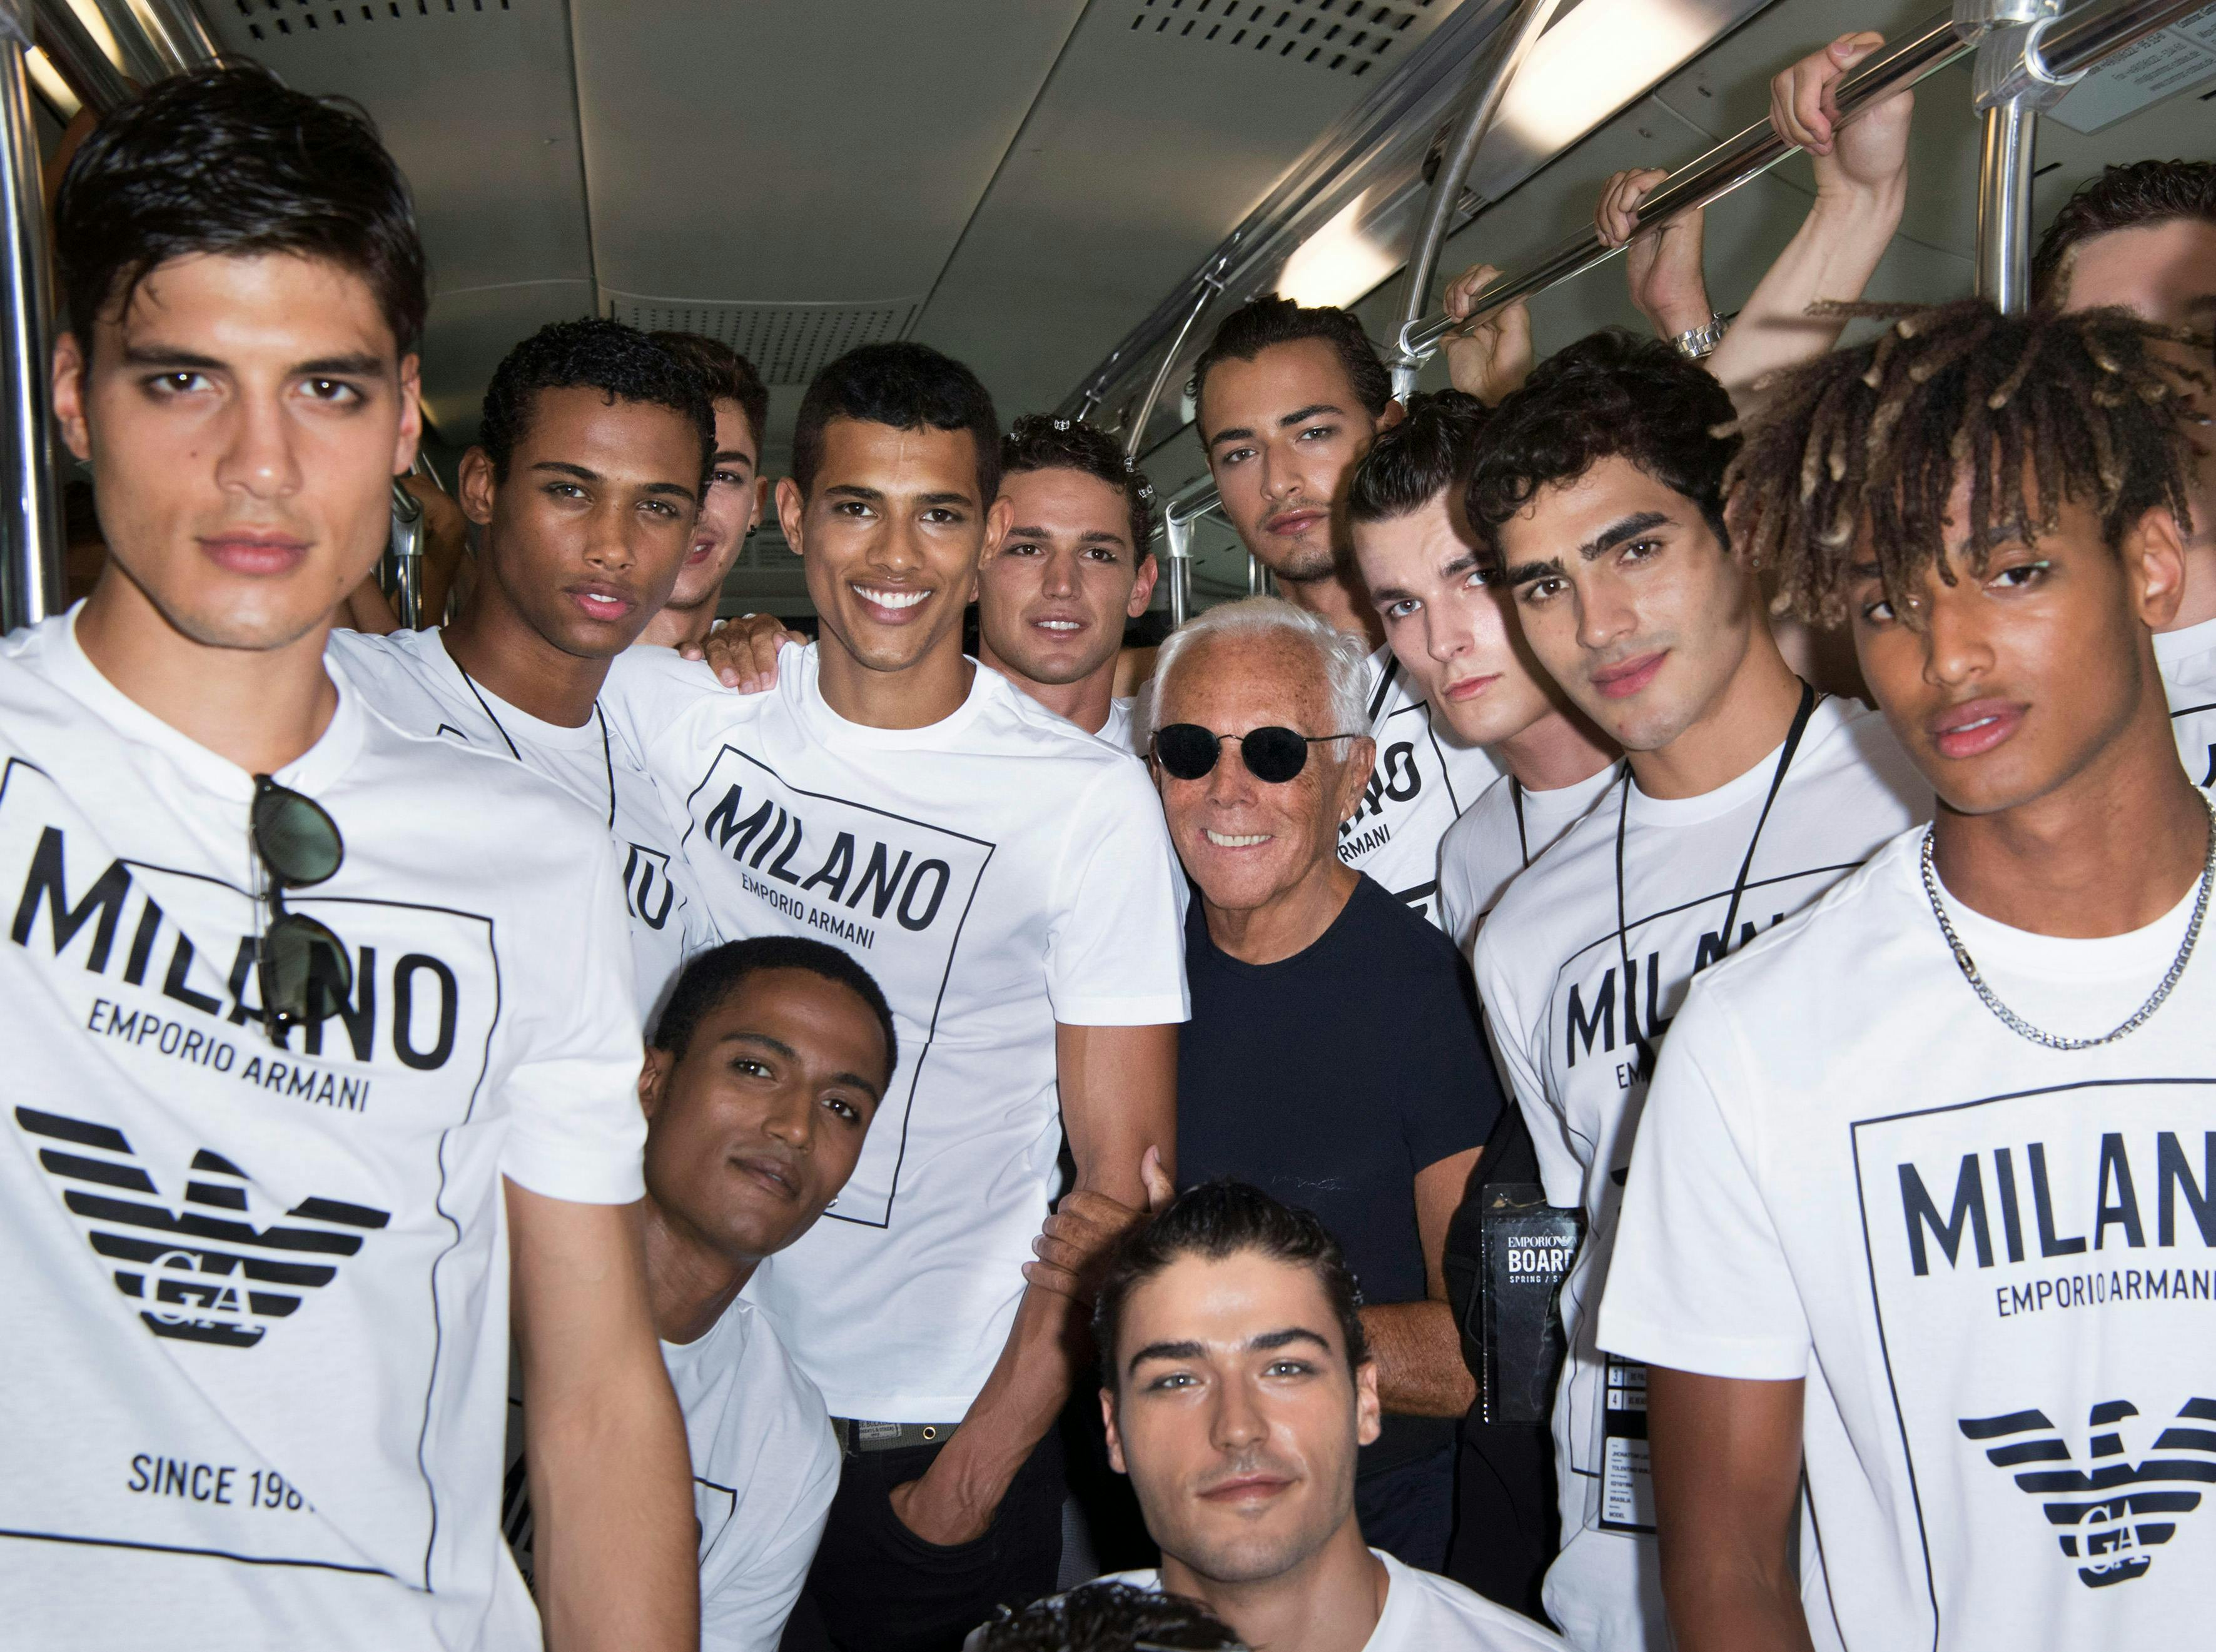 Giorgio Armani con la sua squadra di modelli per celebrare il 40° anniversario di Emporio Armani